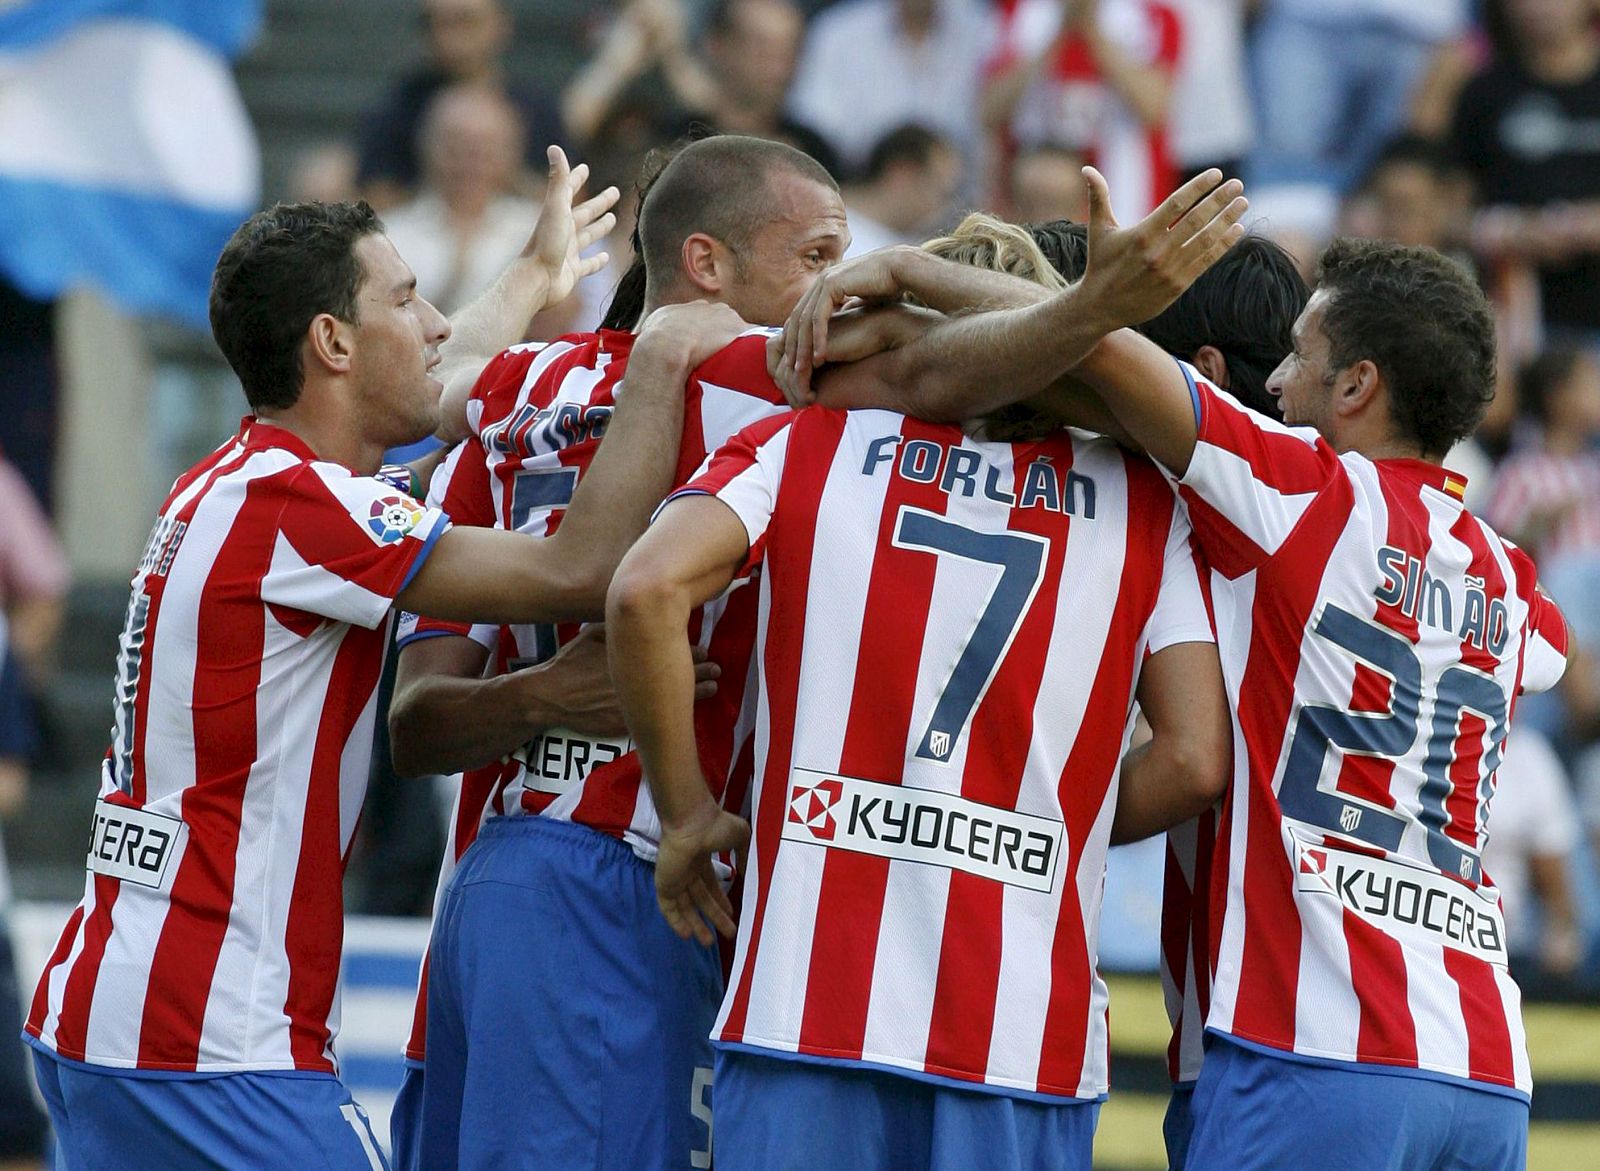 Los jugadores del Atlético de Madrid celebran el gol marcado por el equipo ante el Málaga, durante el partido correspondiente a la 1ª jornada de la Liga disputado en el estadio Vicente Calderón de Madrid.